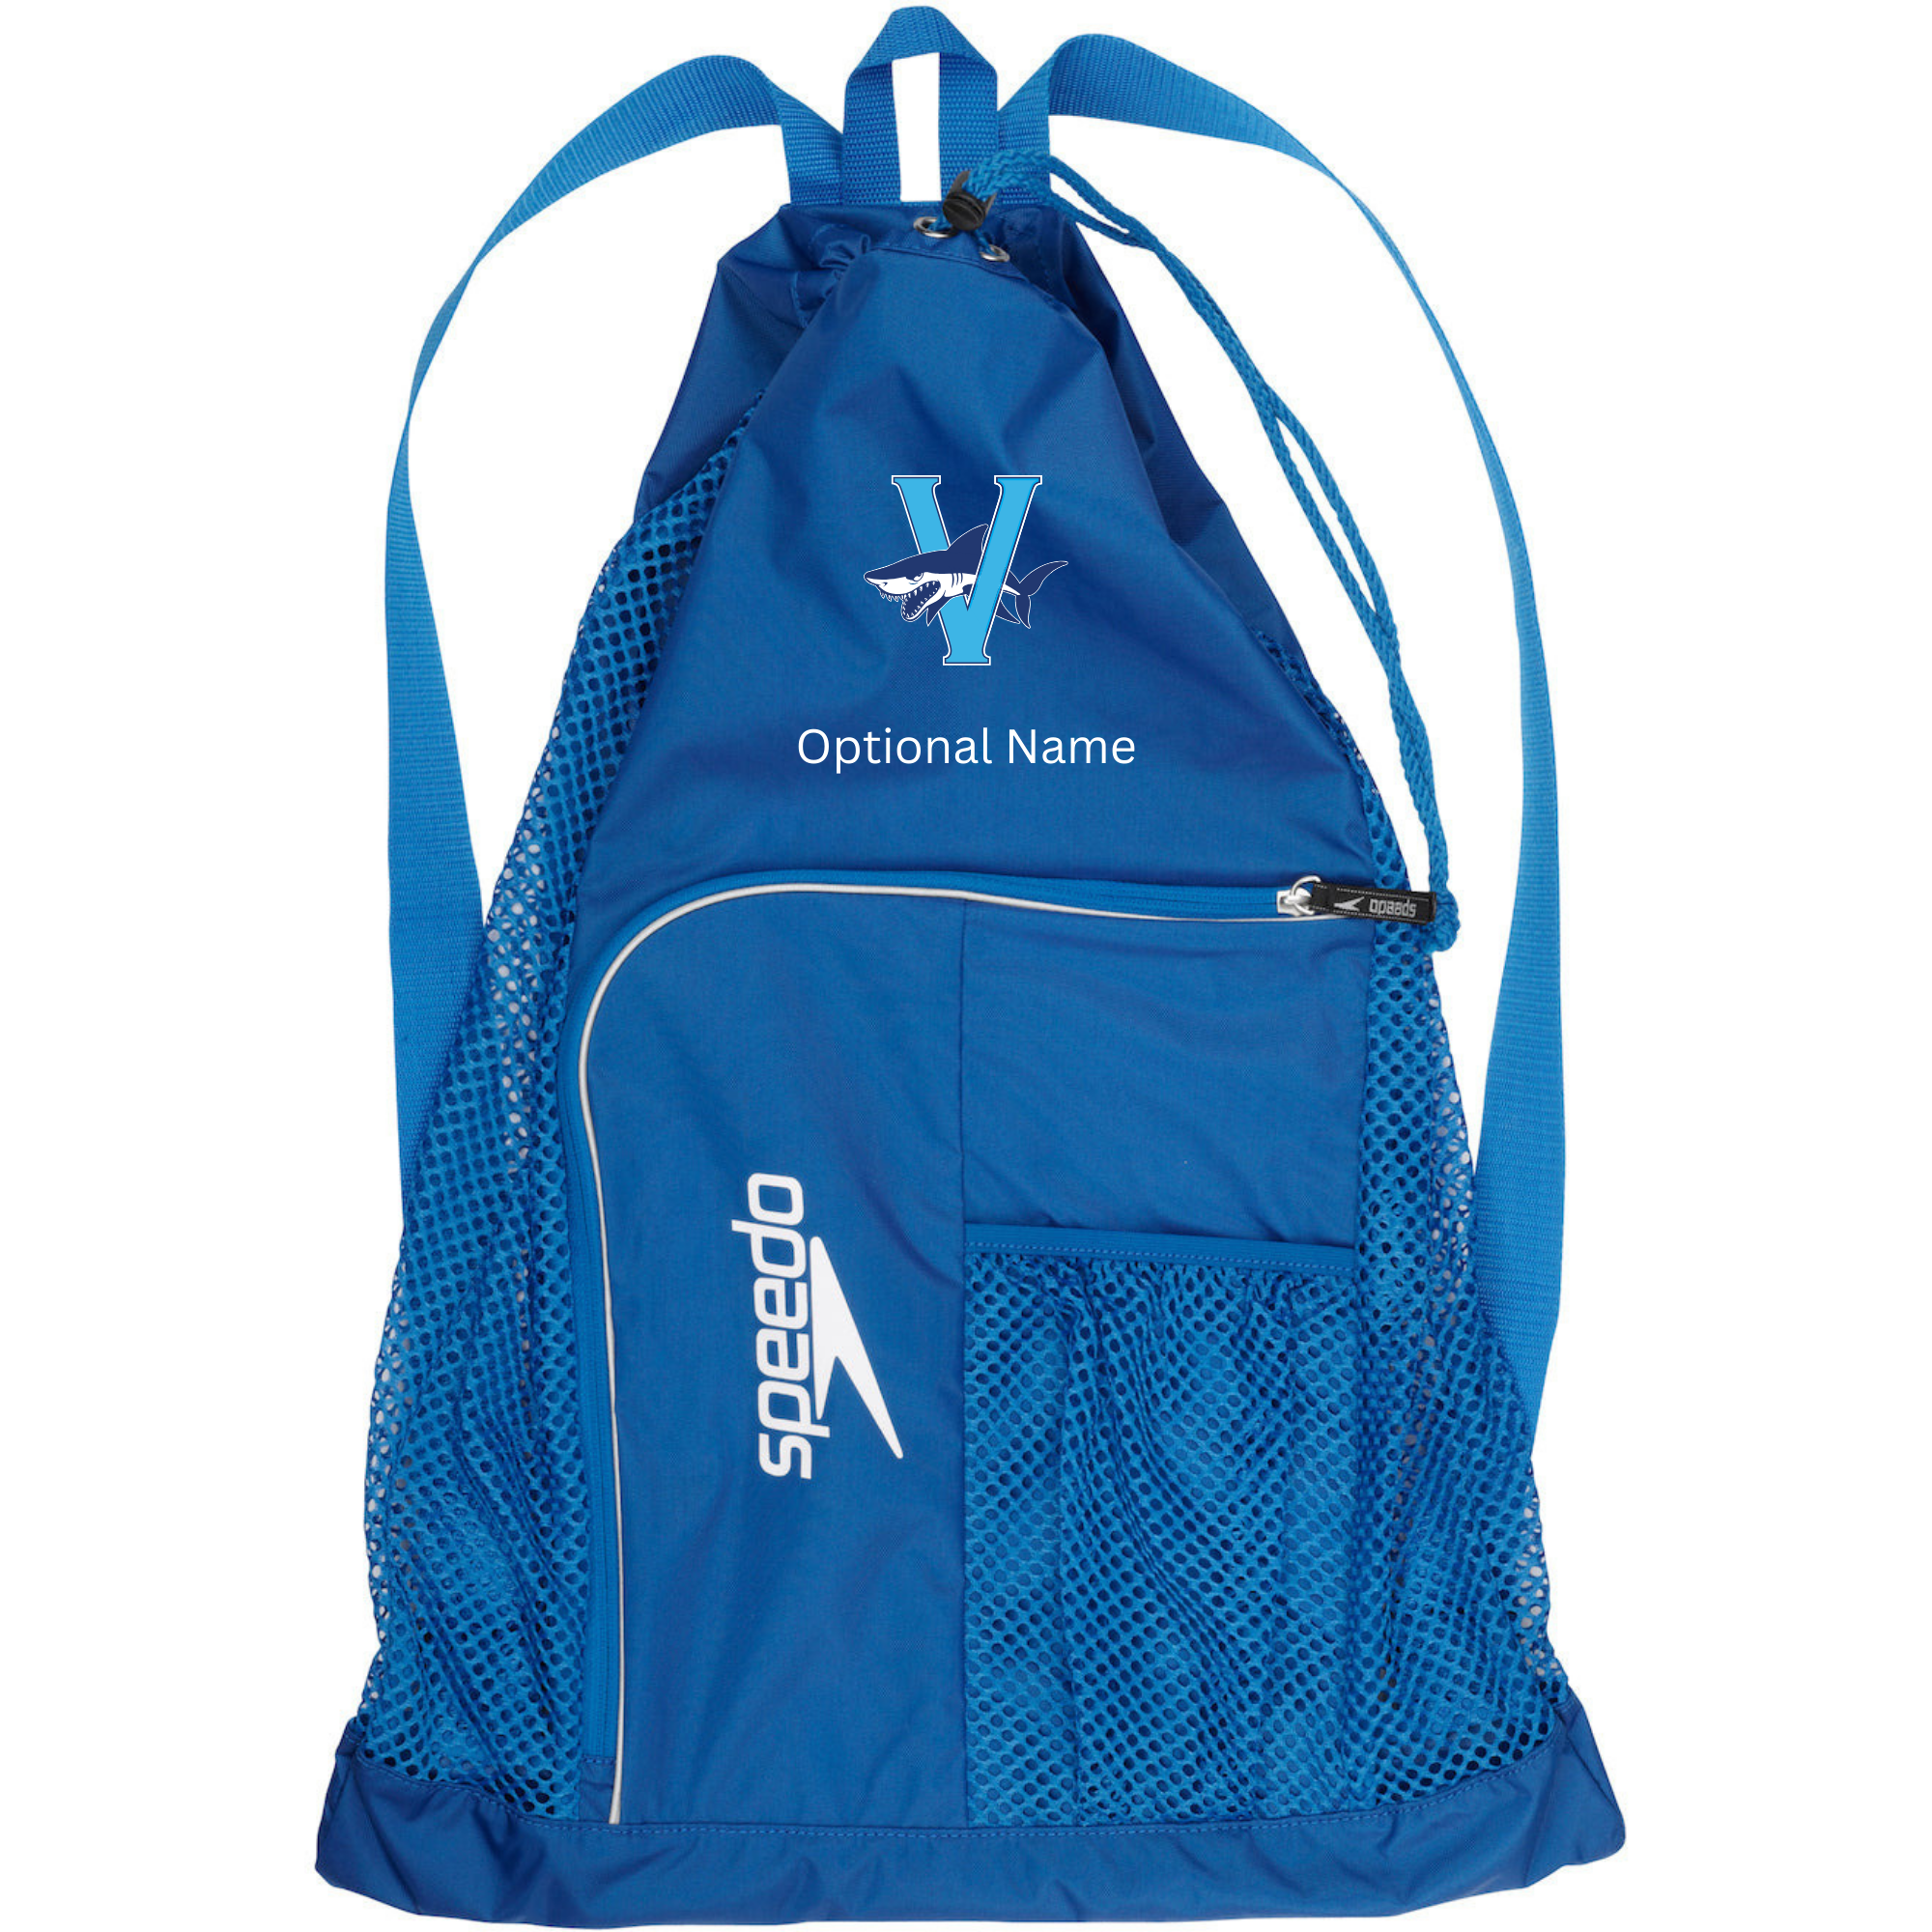 Speedo Deluxe Ventilator Backpack (Customized) - Venetian